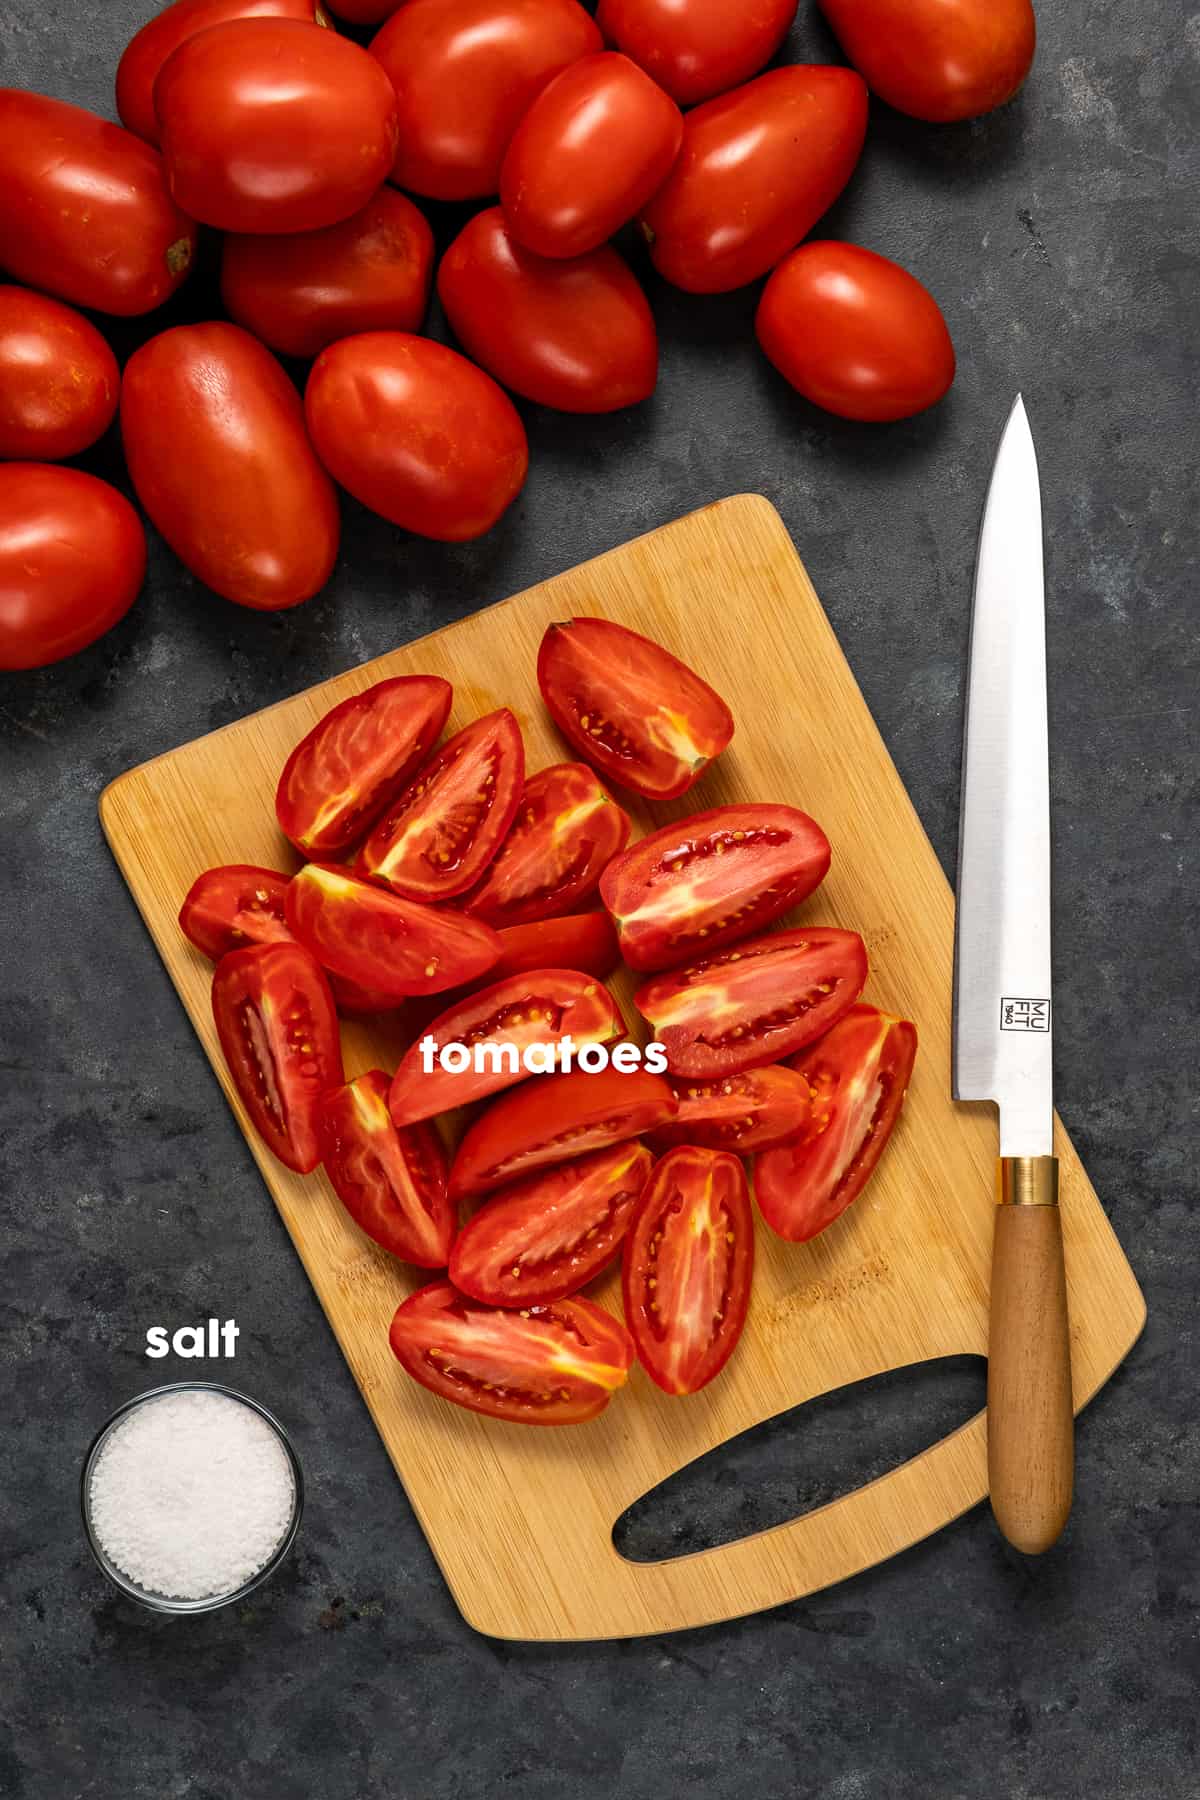 切菜板上放上切好的西红柿，切菜板上放上一把刀，小碗里放上粗盐，旁边放上整个西红柿。